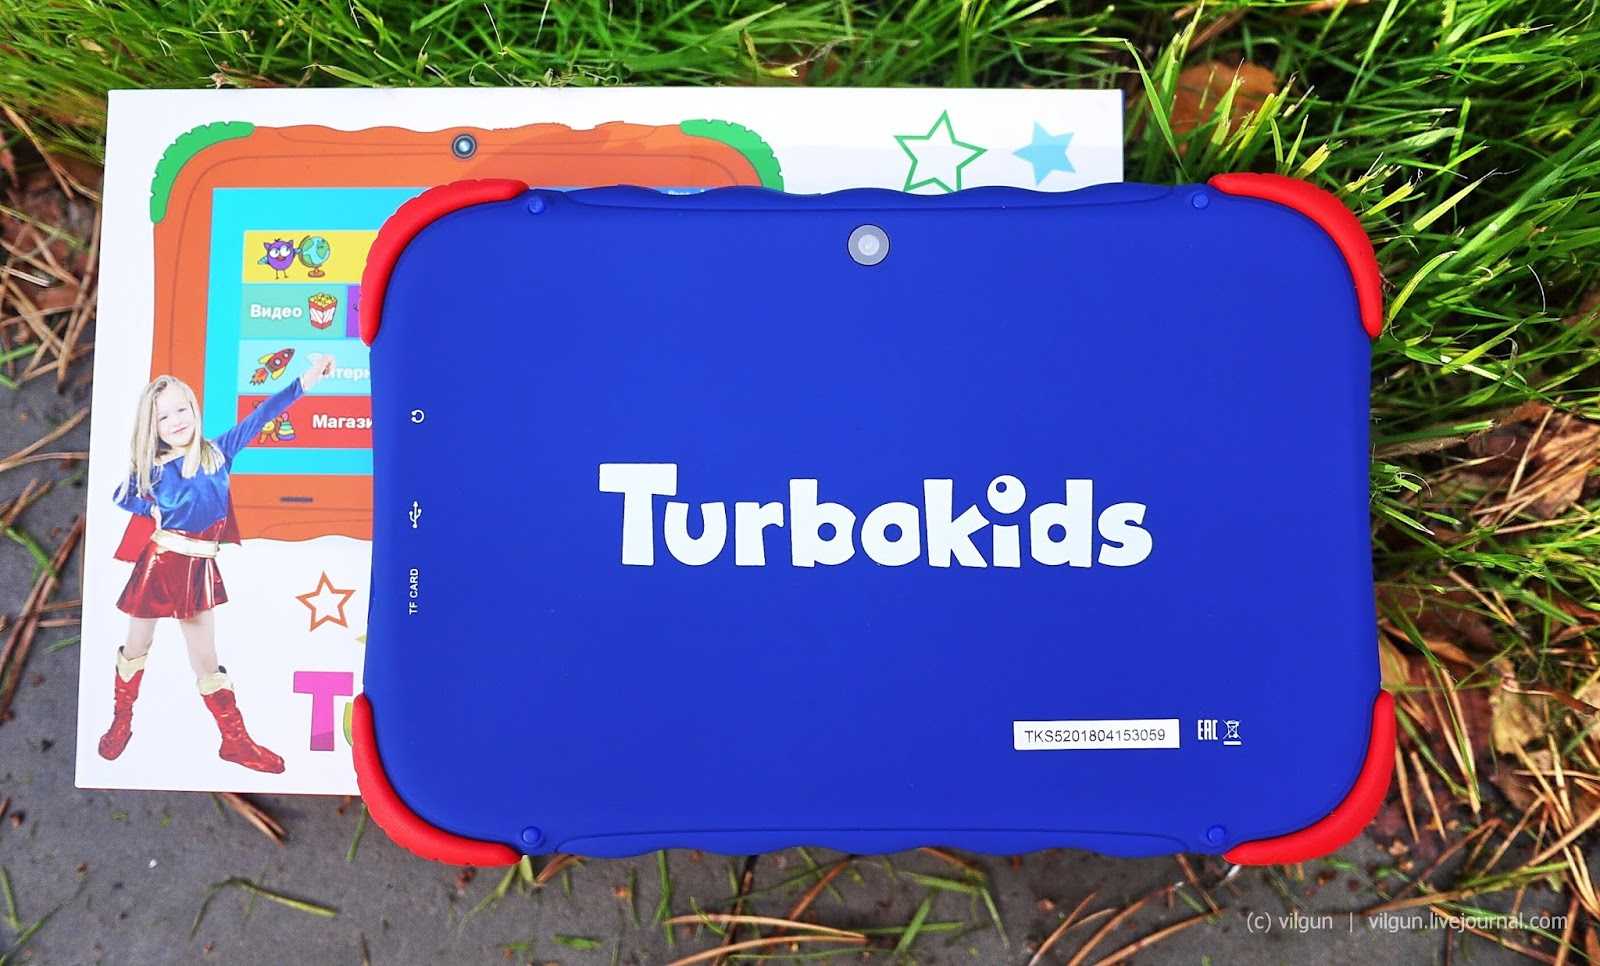 TurboKids S5 - короткий но максимально информативный обзор Для большего удобства добавлены характеристики отзывы и видео